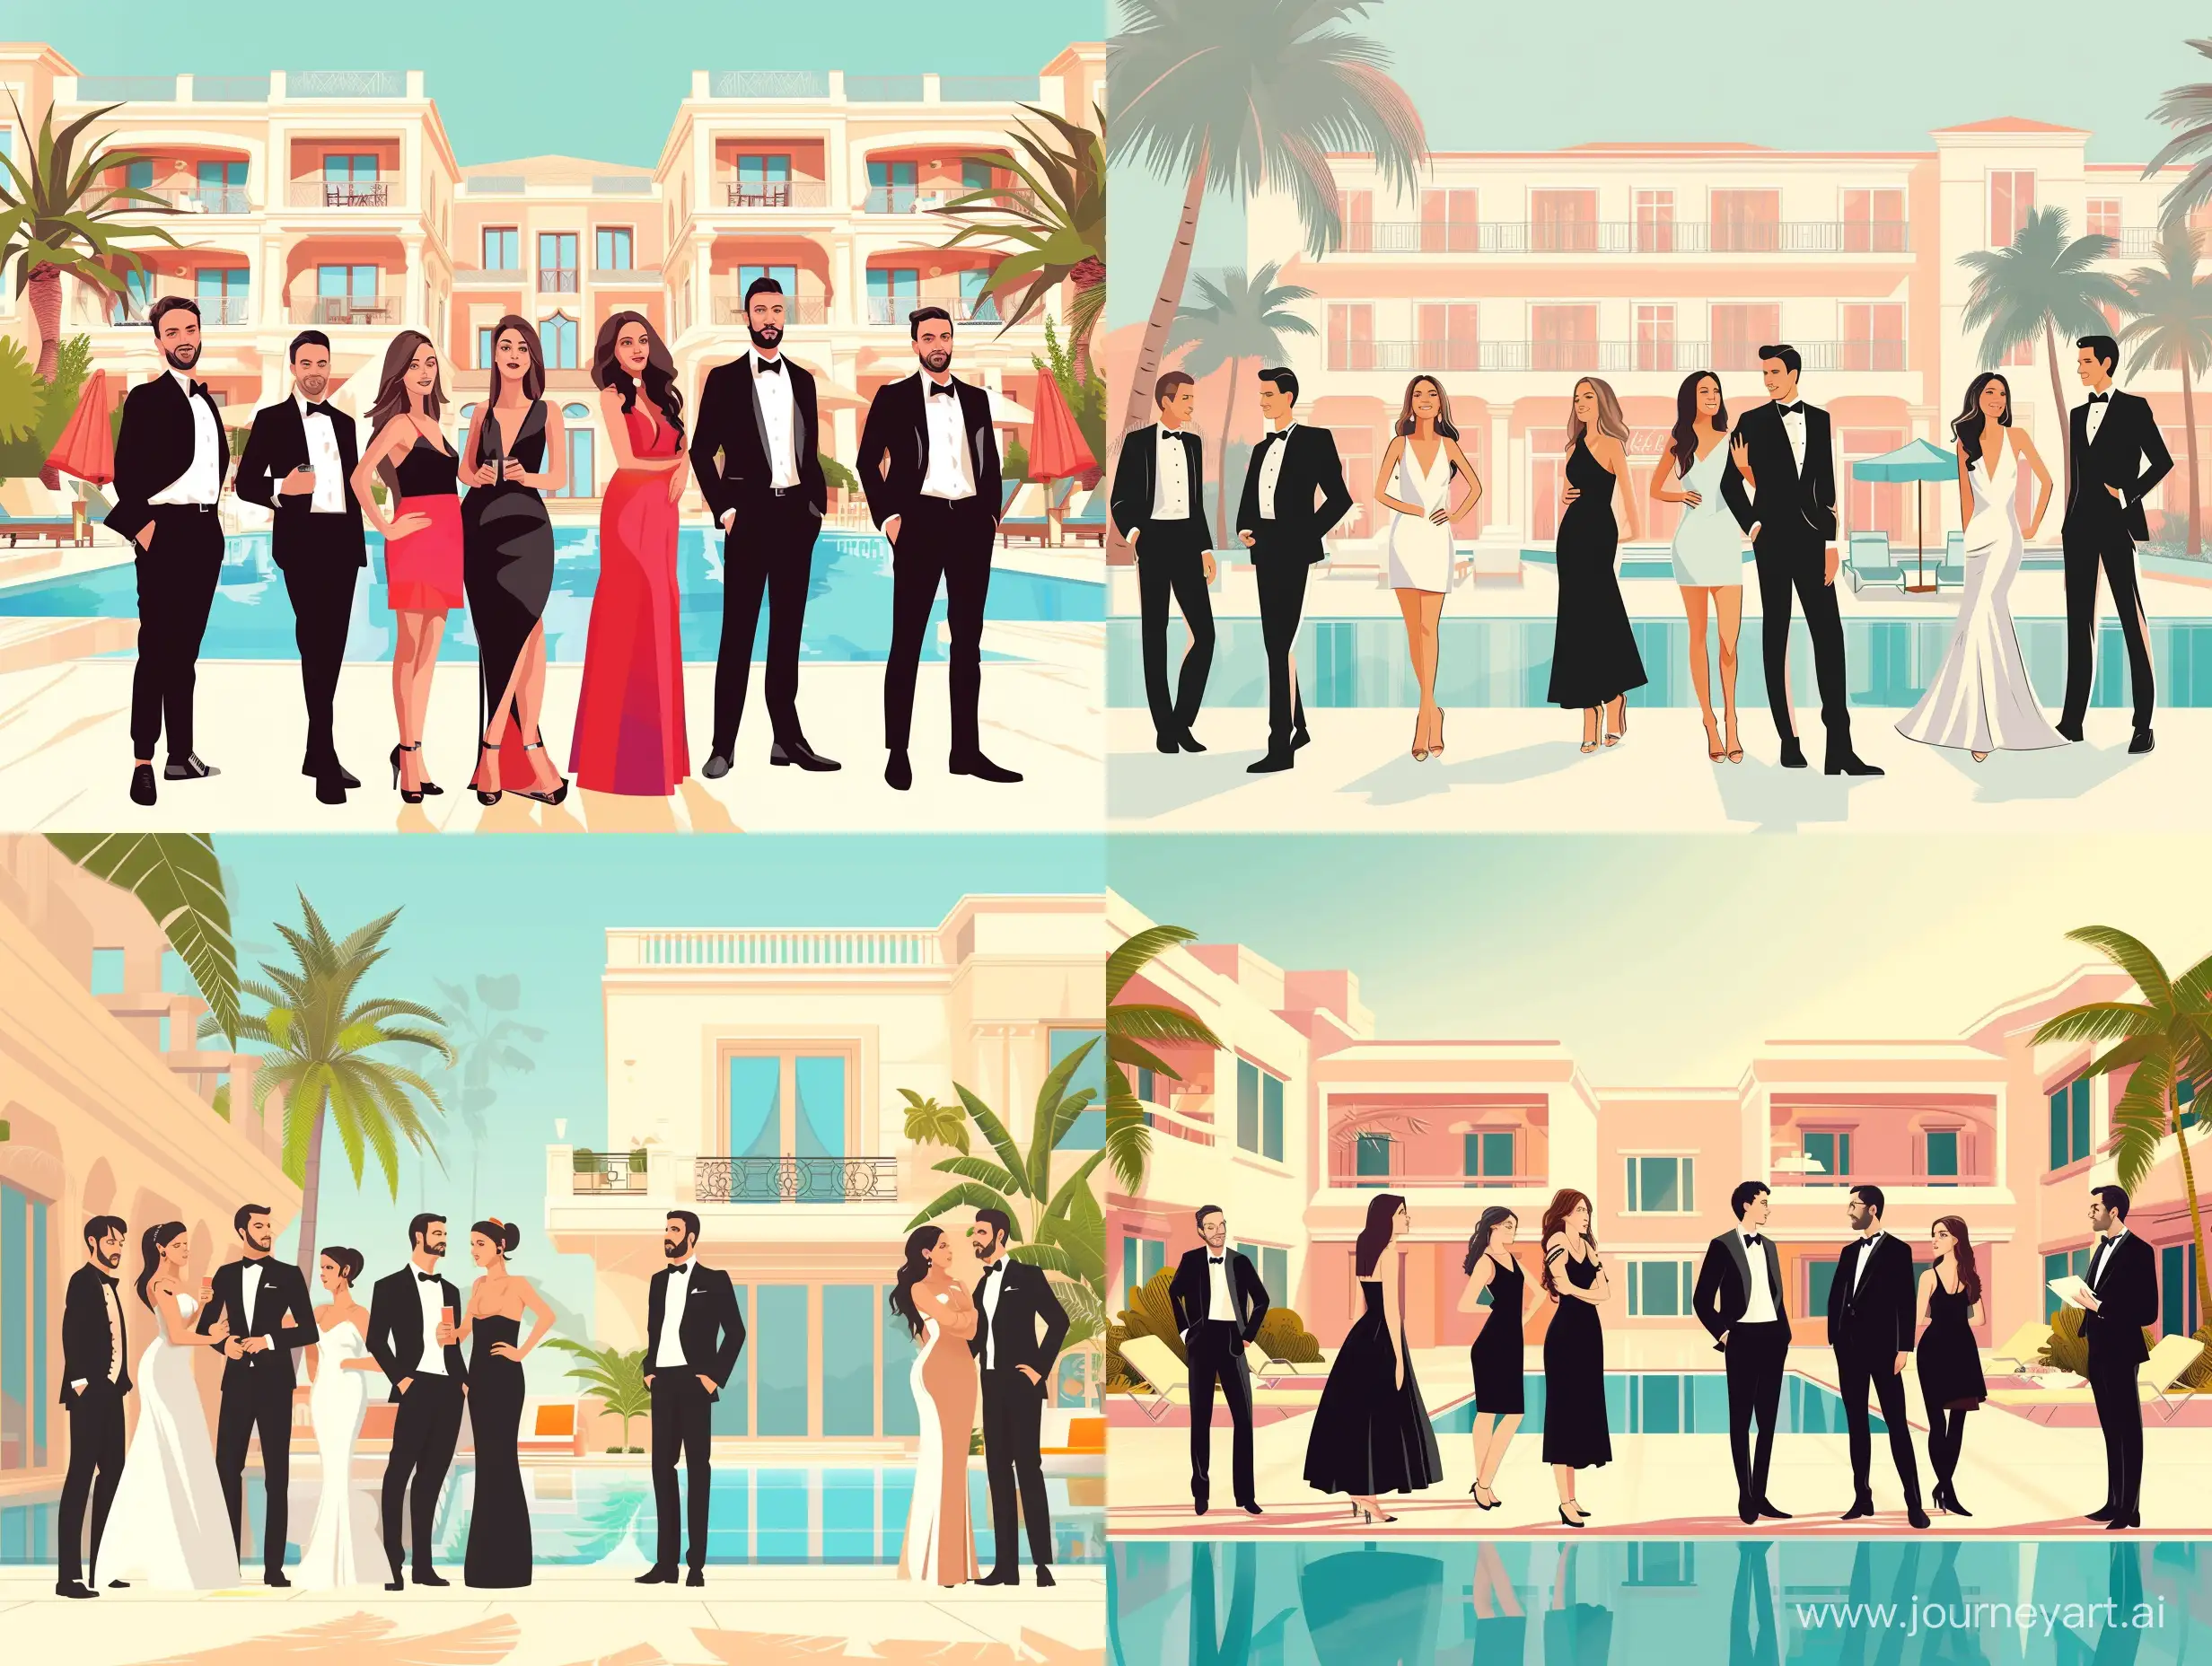 Команда ресепшен в Турции из шести человек (девушки и мужчины) в официальной одежде на фоне шикарного отеля в светлых тонах с бассейном и пальмами. тип изображения футуристический реализм